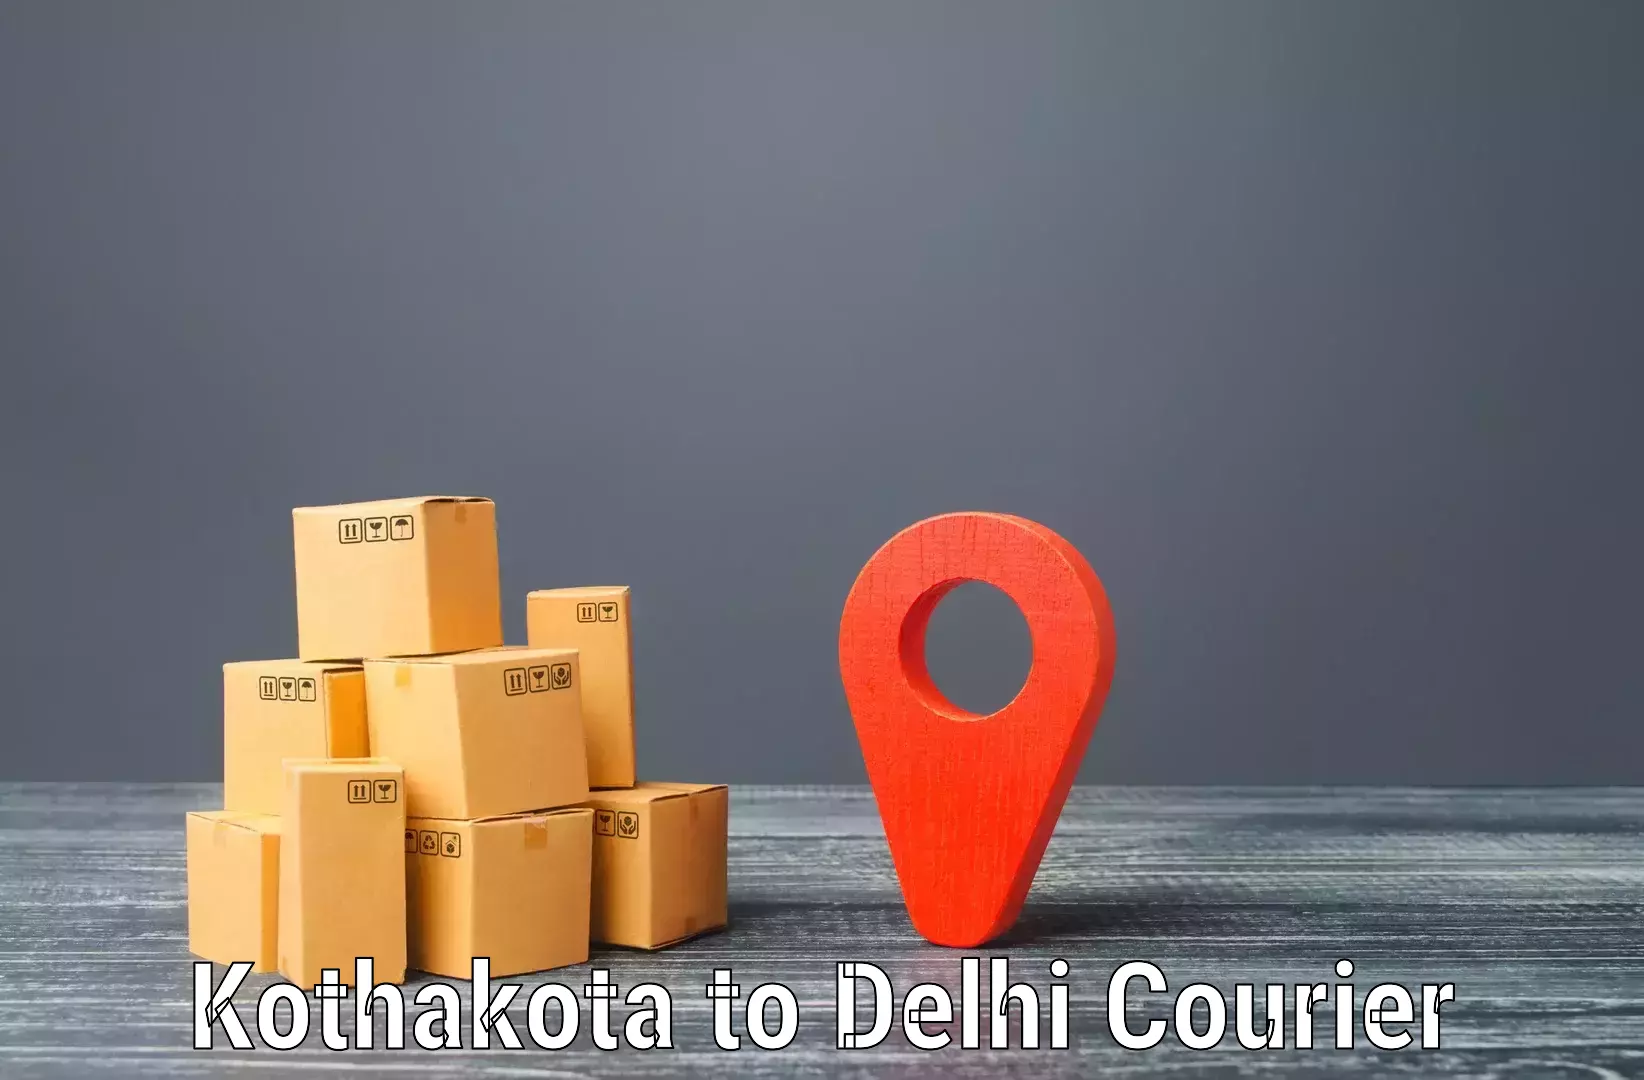 Advanced courier platforms Kothakota to Lodhi Road